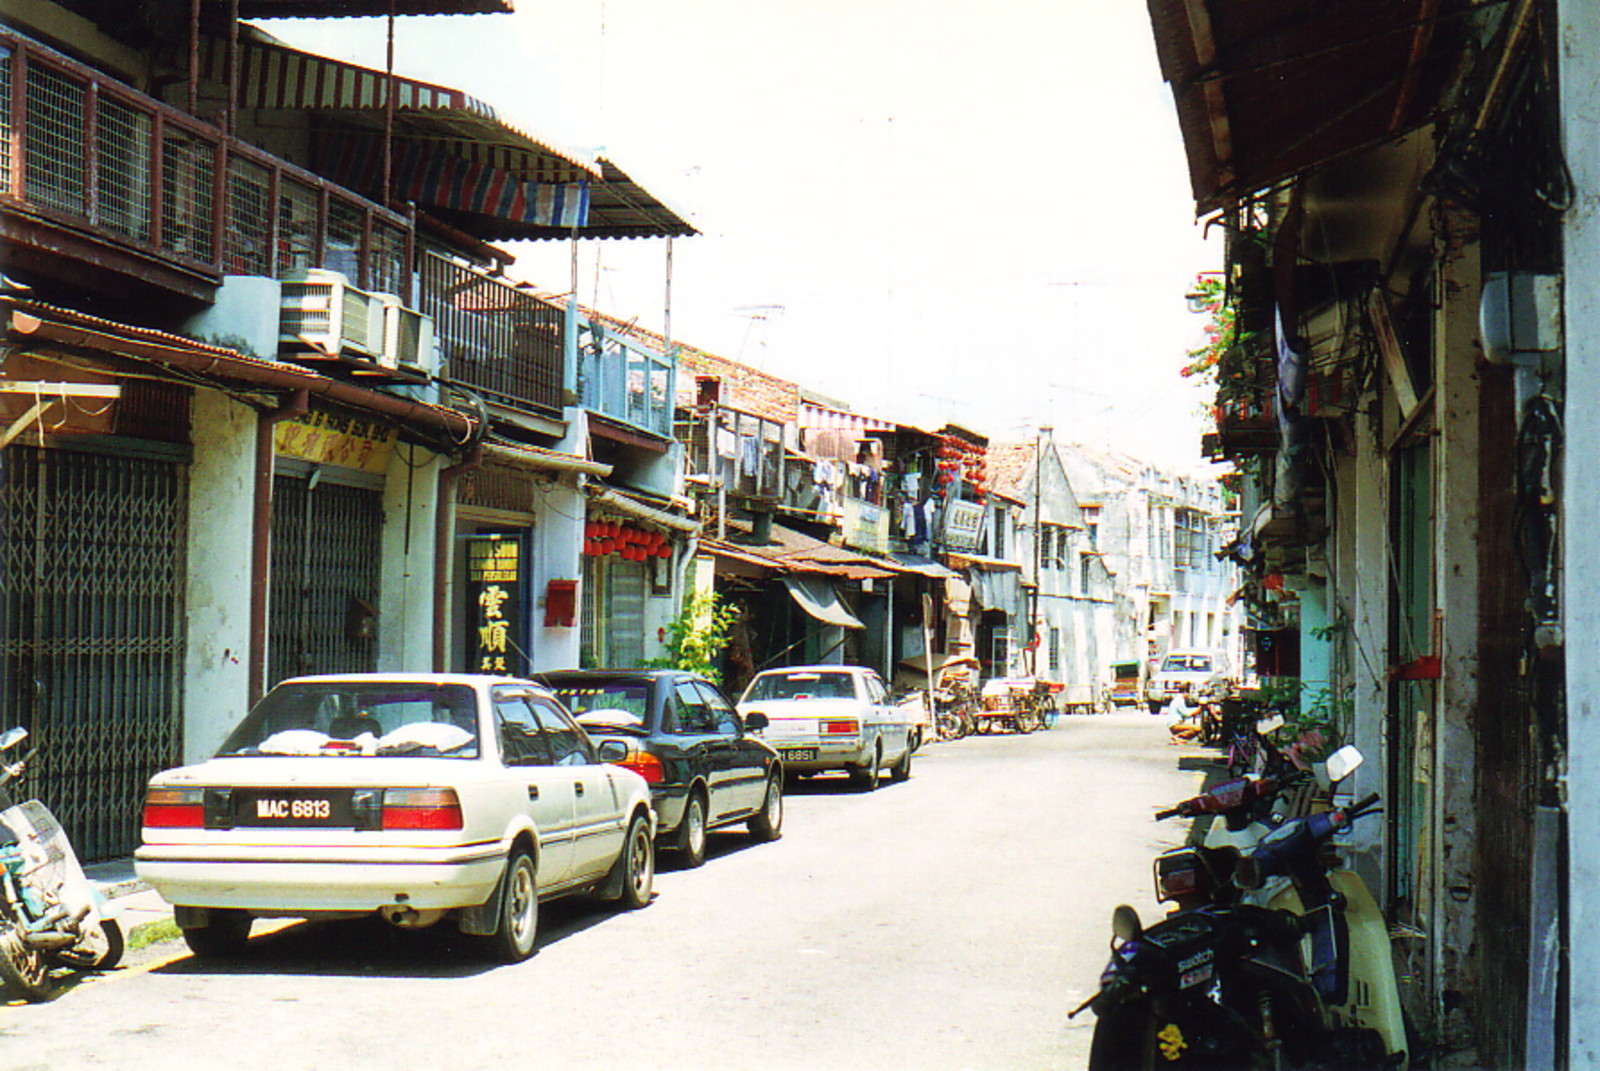 Old Melaka